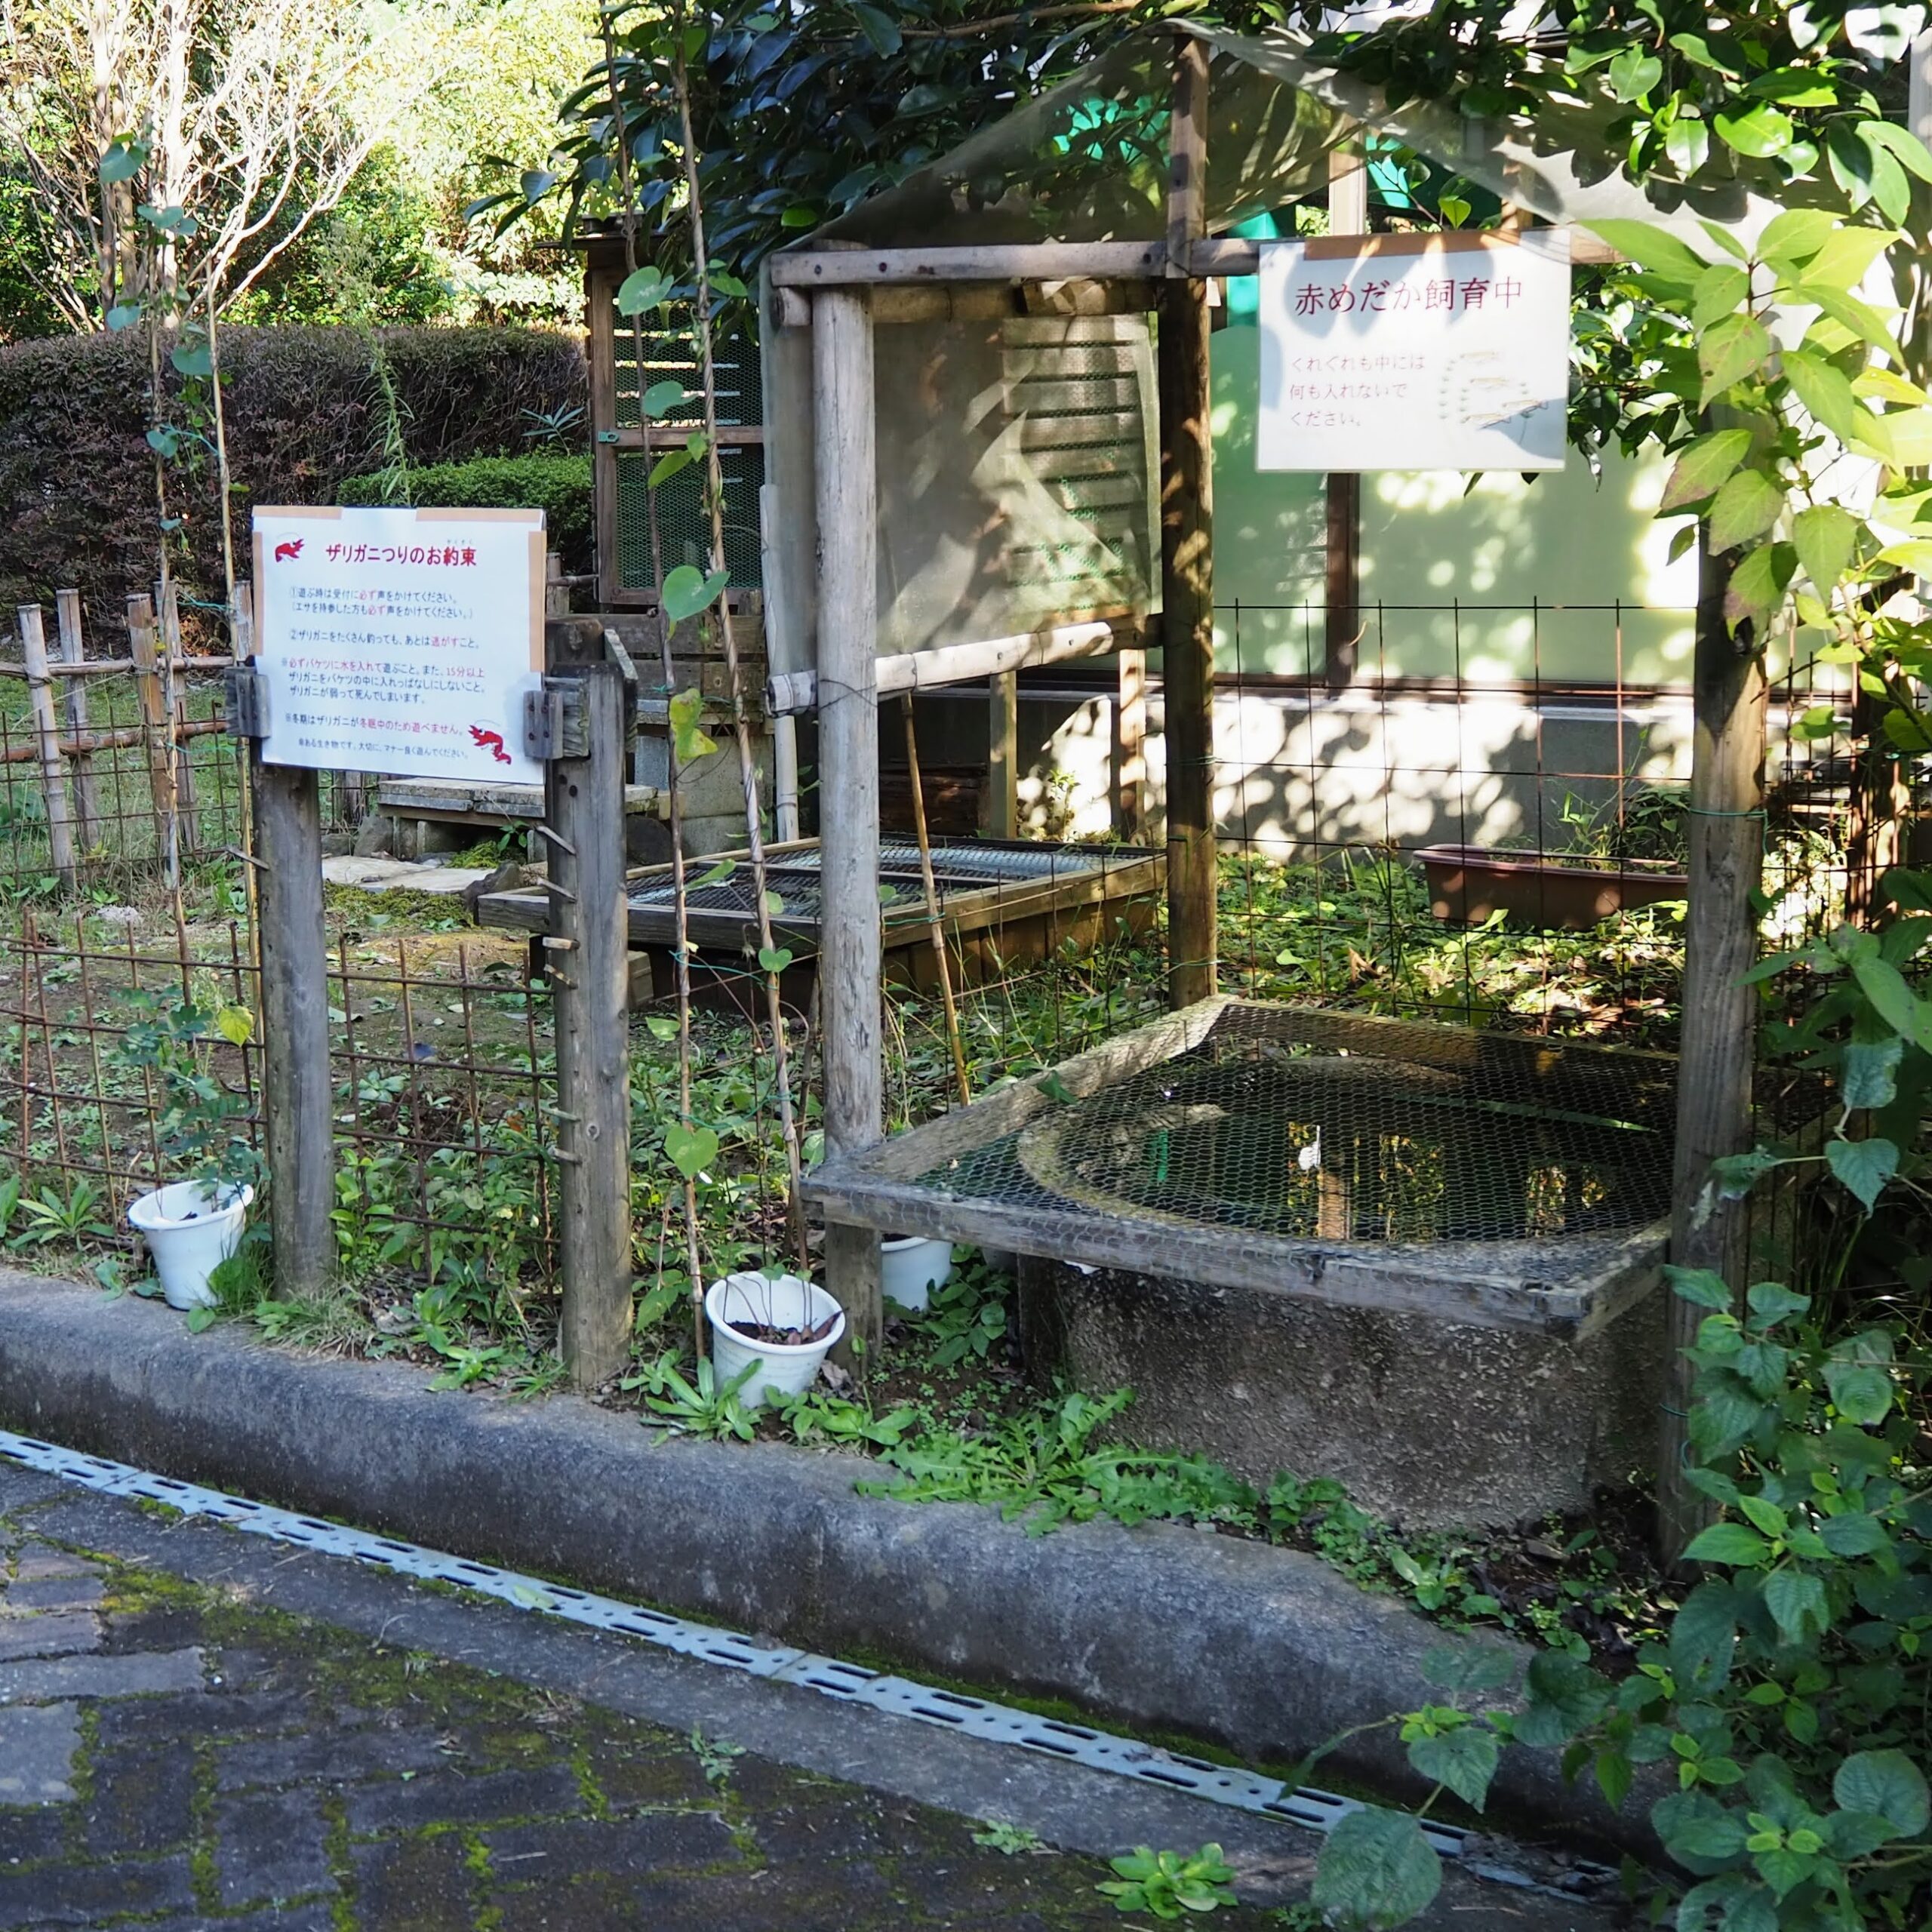 茨城県かすみがうら市 雪入ふれあいの里公園 ネイチャーセンター ザリガニ釣りコーナー